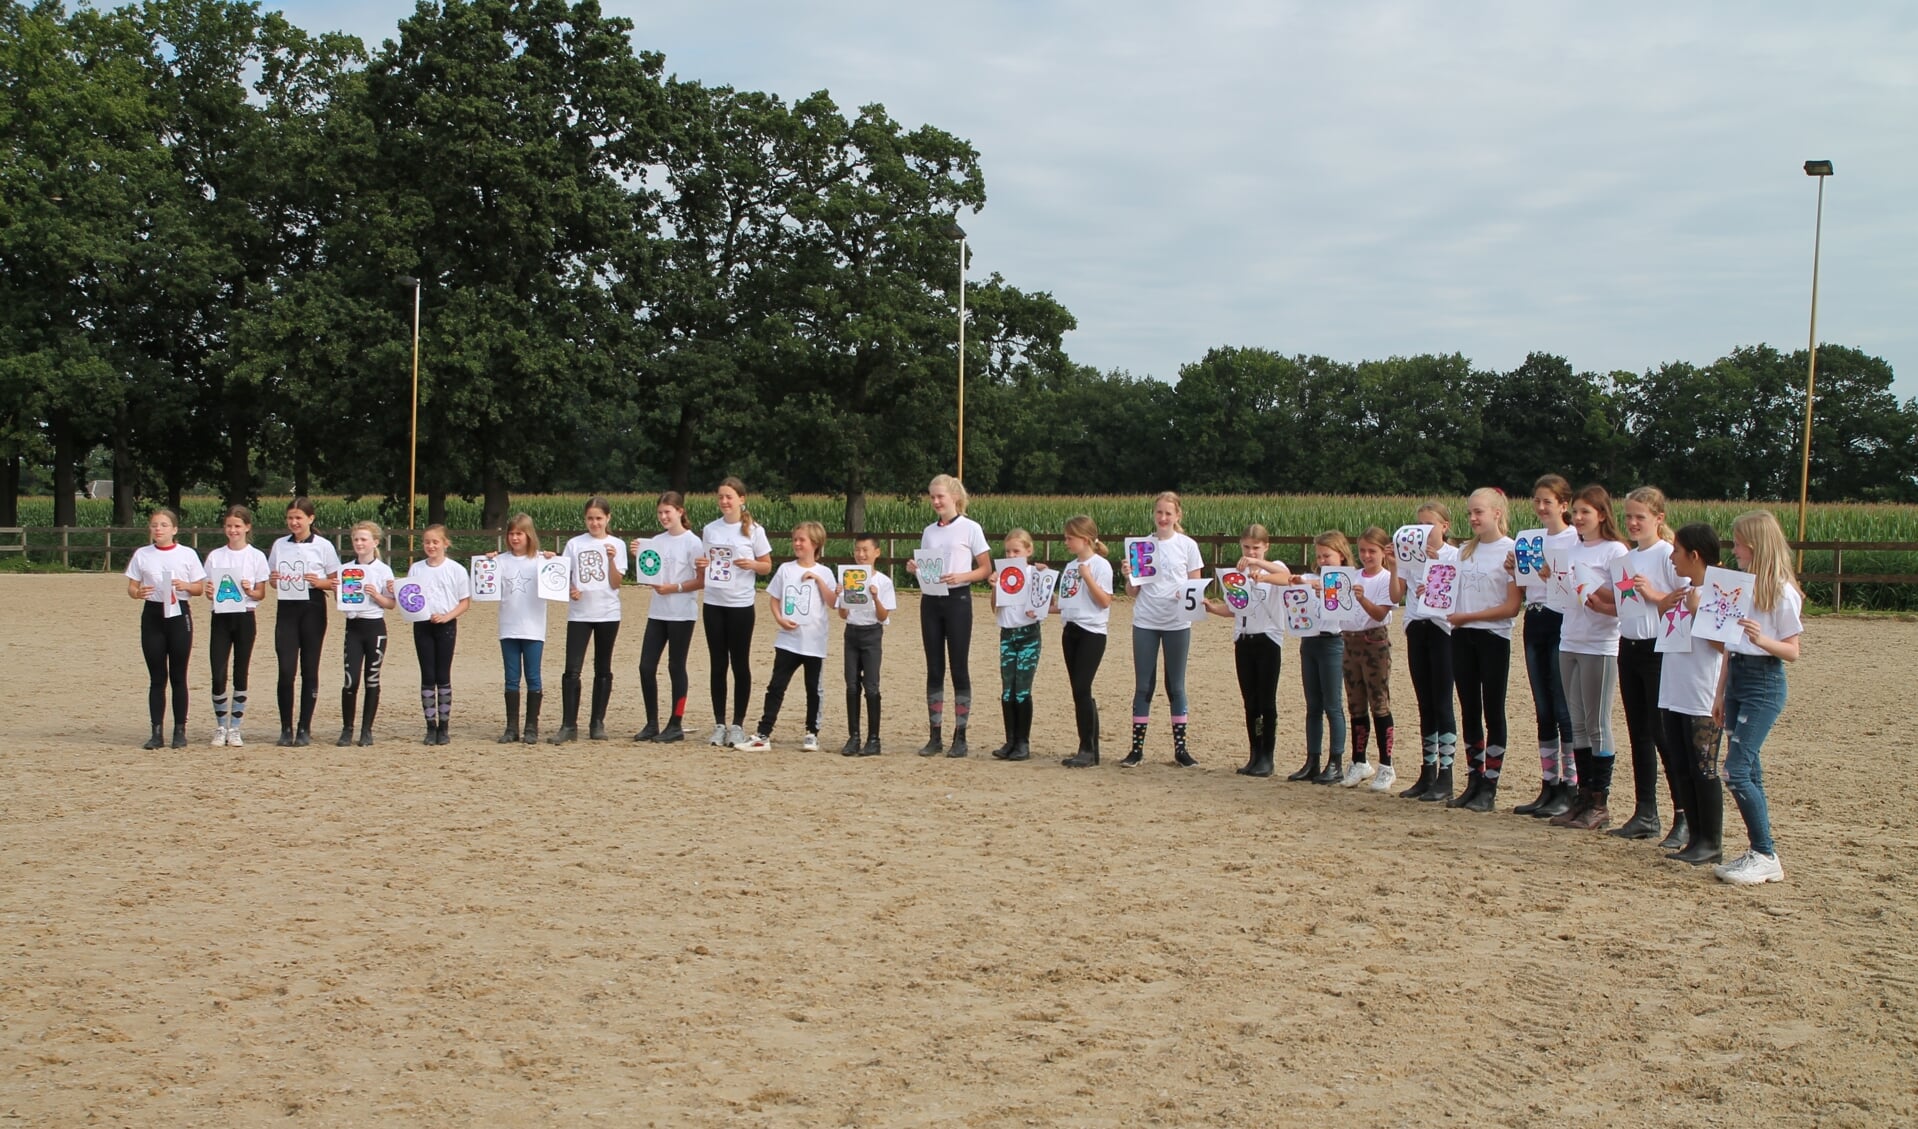 De deelnemers aan het ponykamp met hun 5 sterren t shirt en de letters van manege Groenewoude